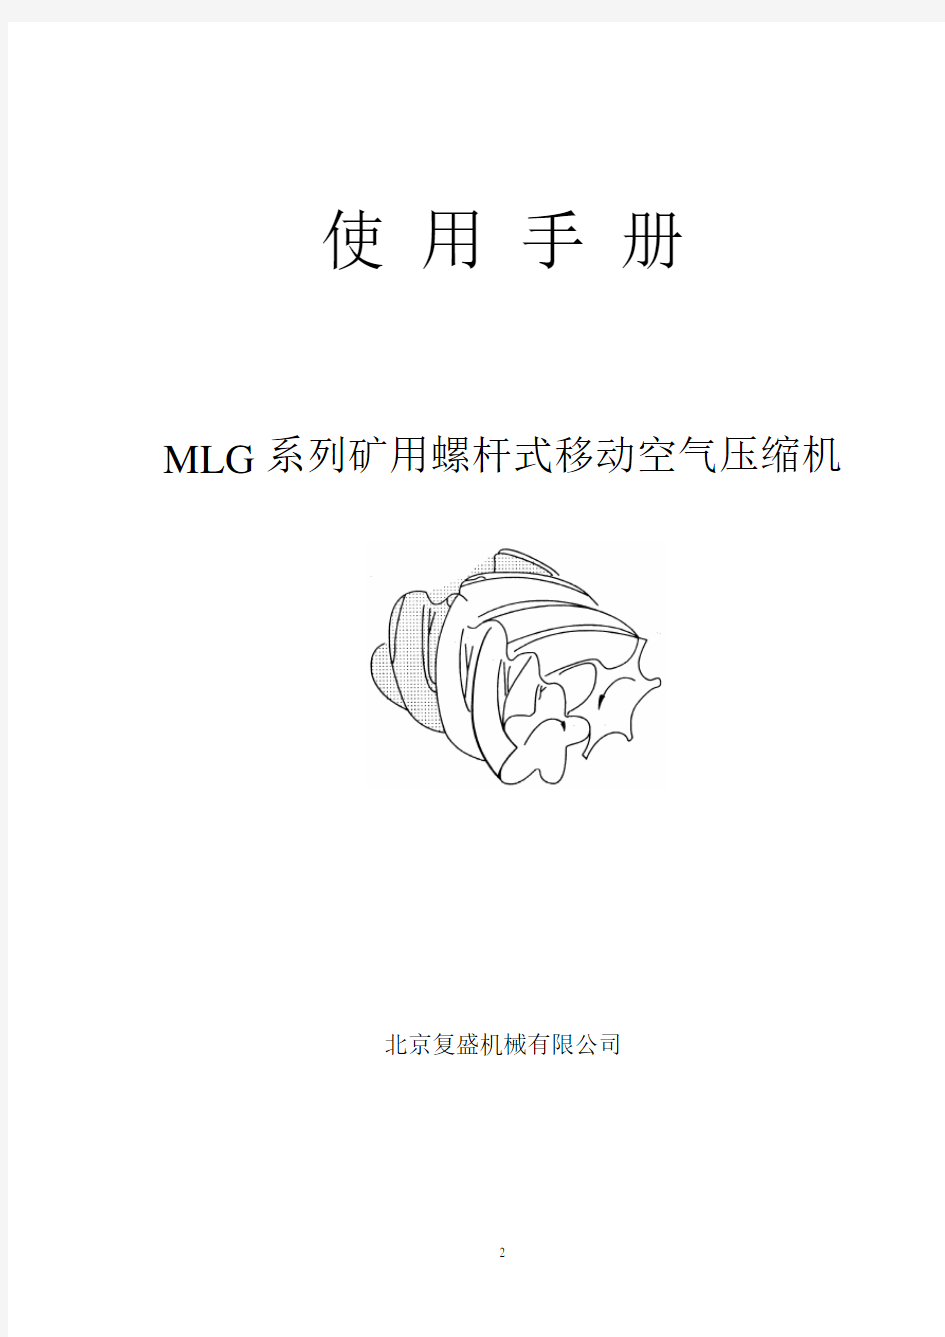 北京复盛MLG系列矿用螺杆式移动空气压缩机使用手册介绍